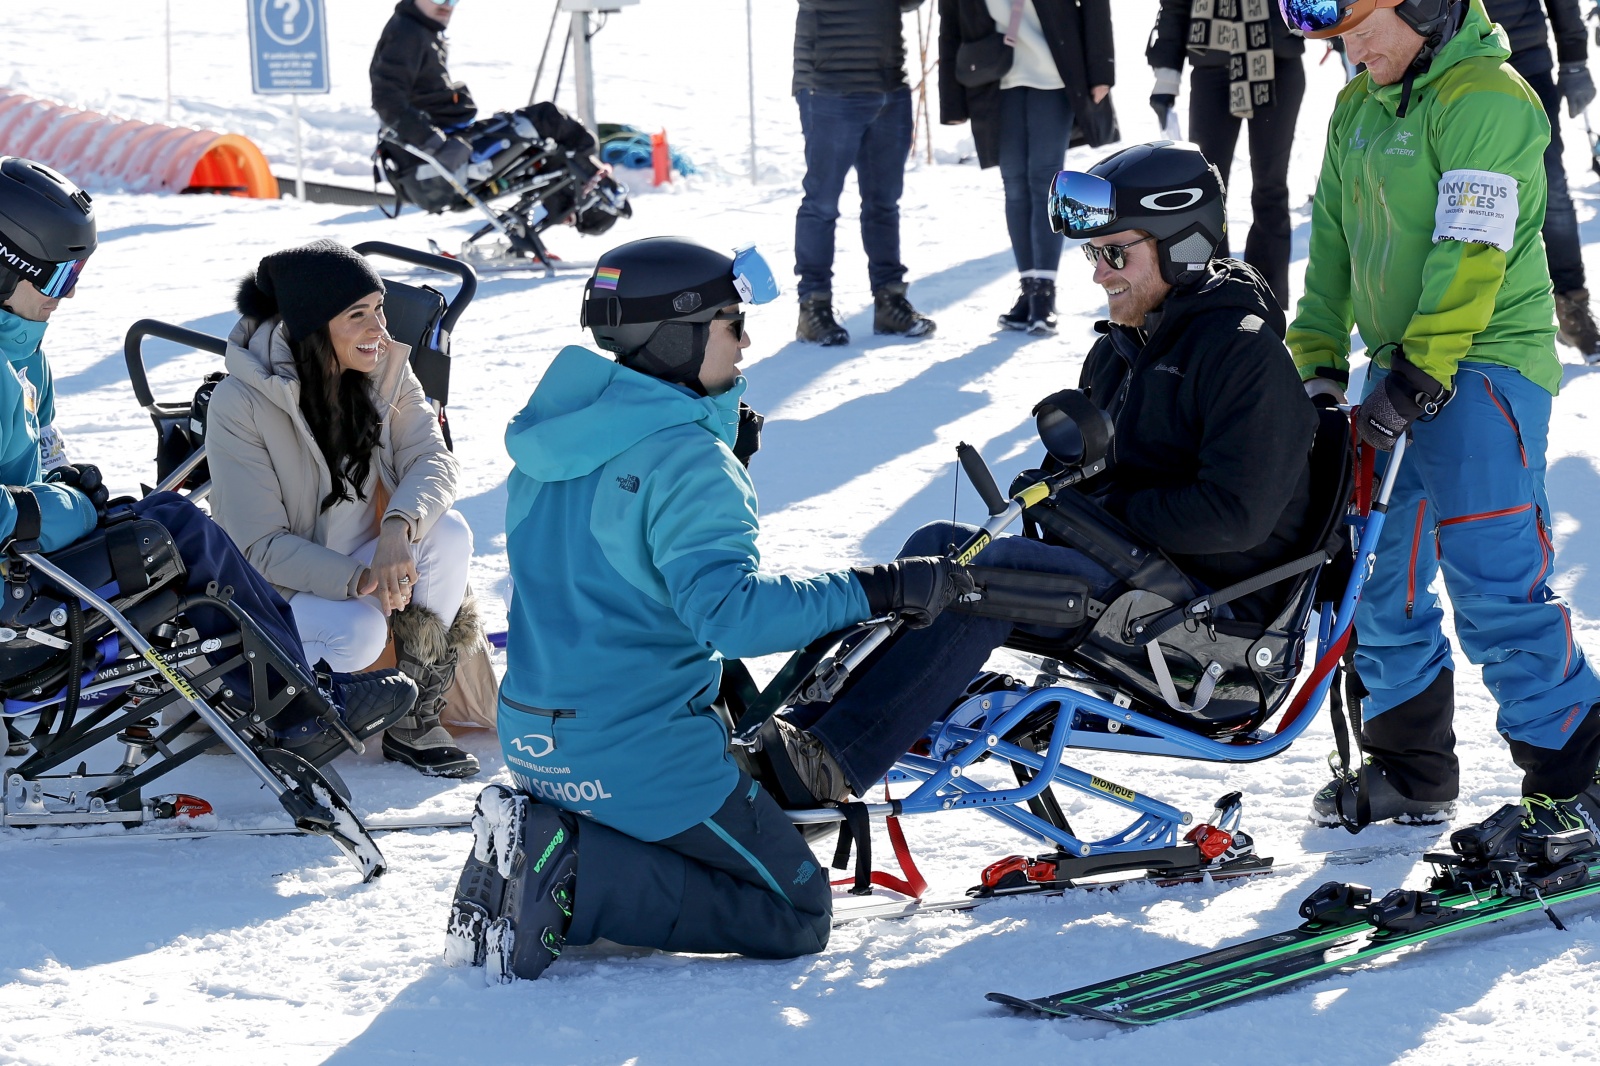 Harry experimenta cadeira de ski adaptado
